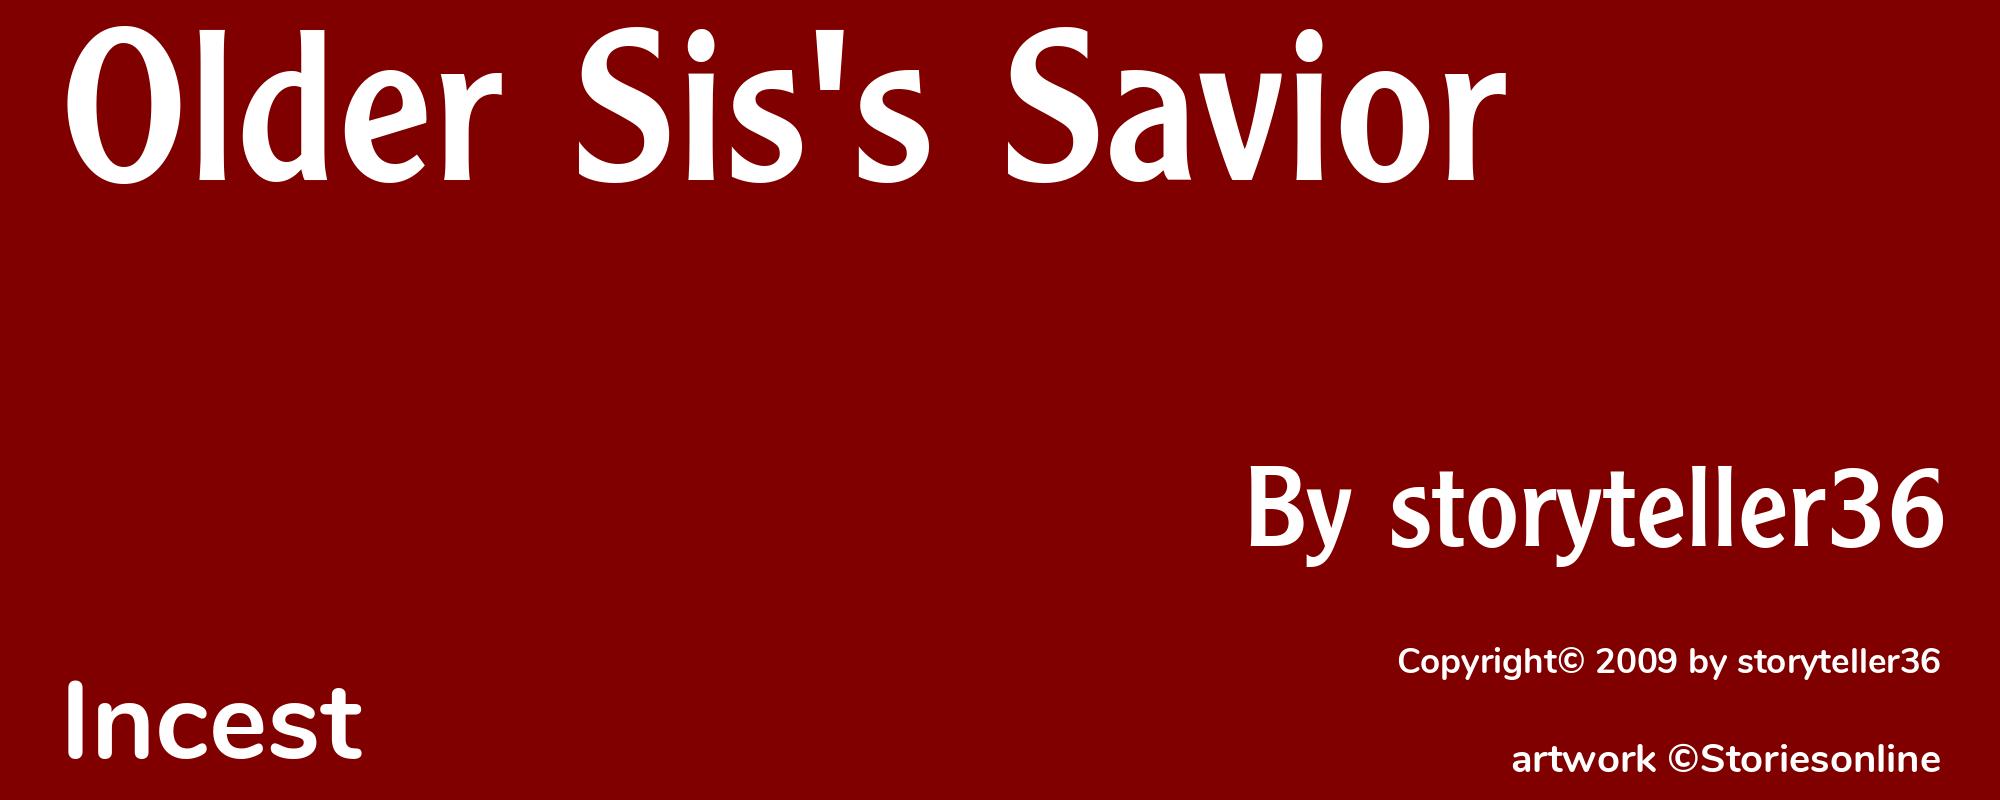 Older Sis's Savior - Cover